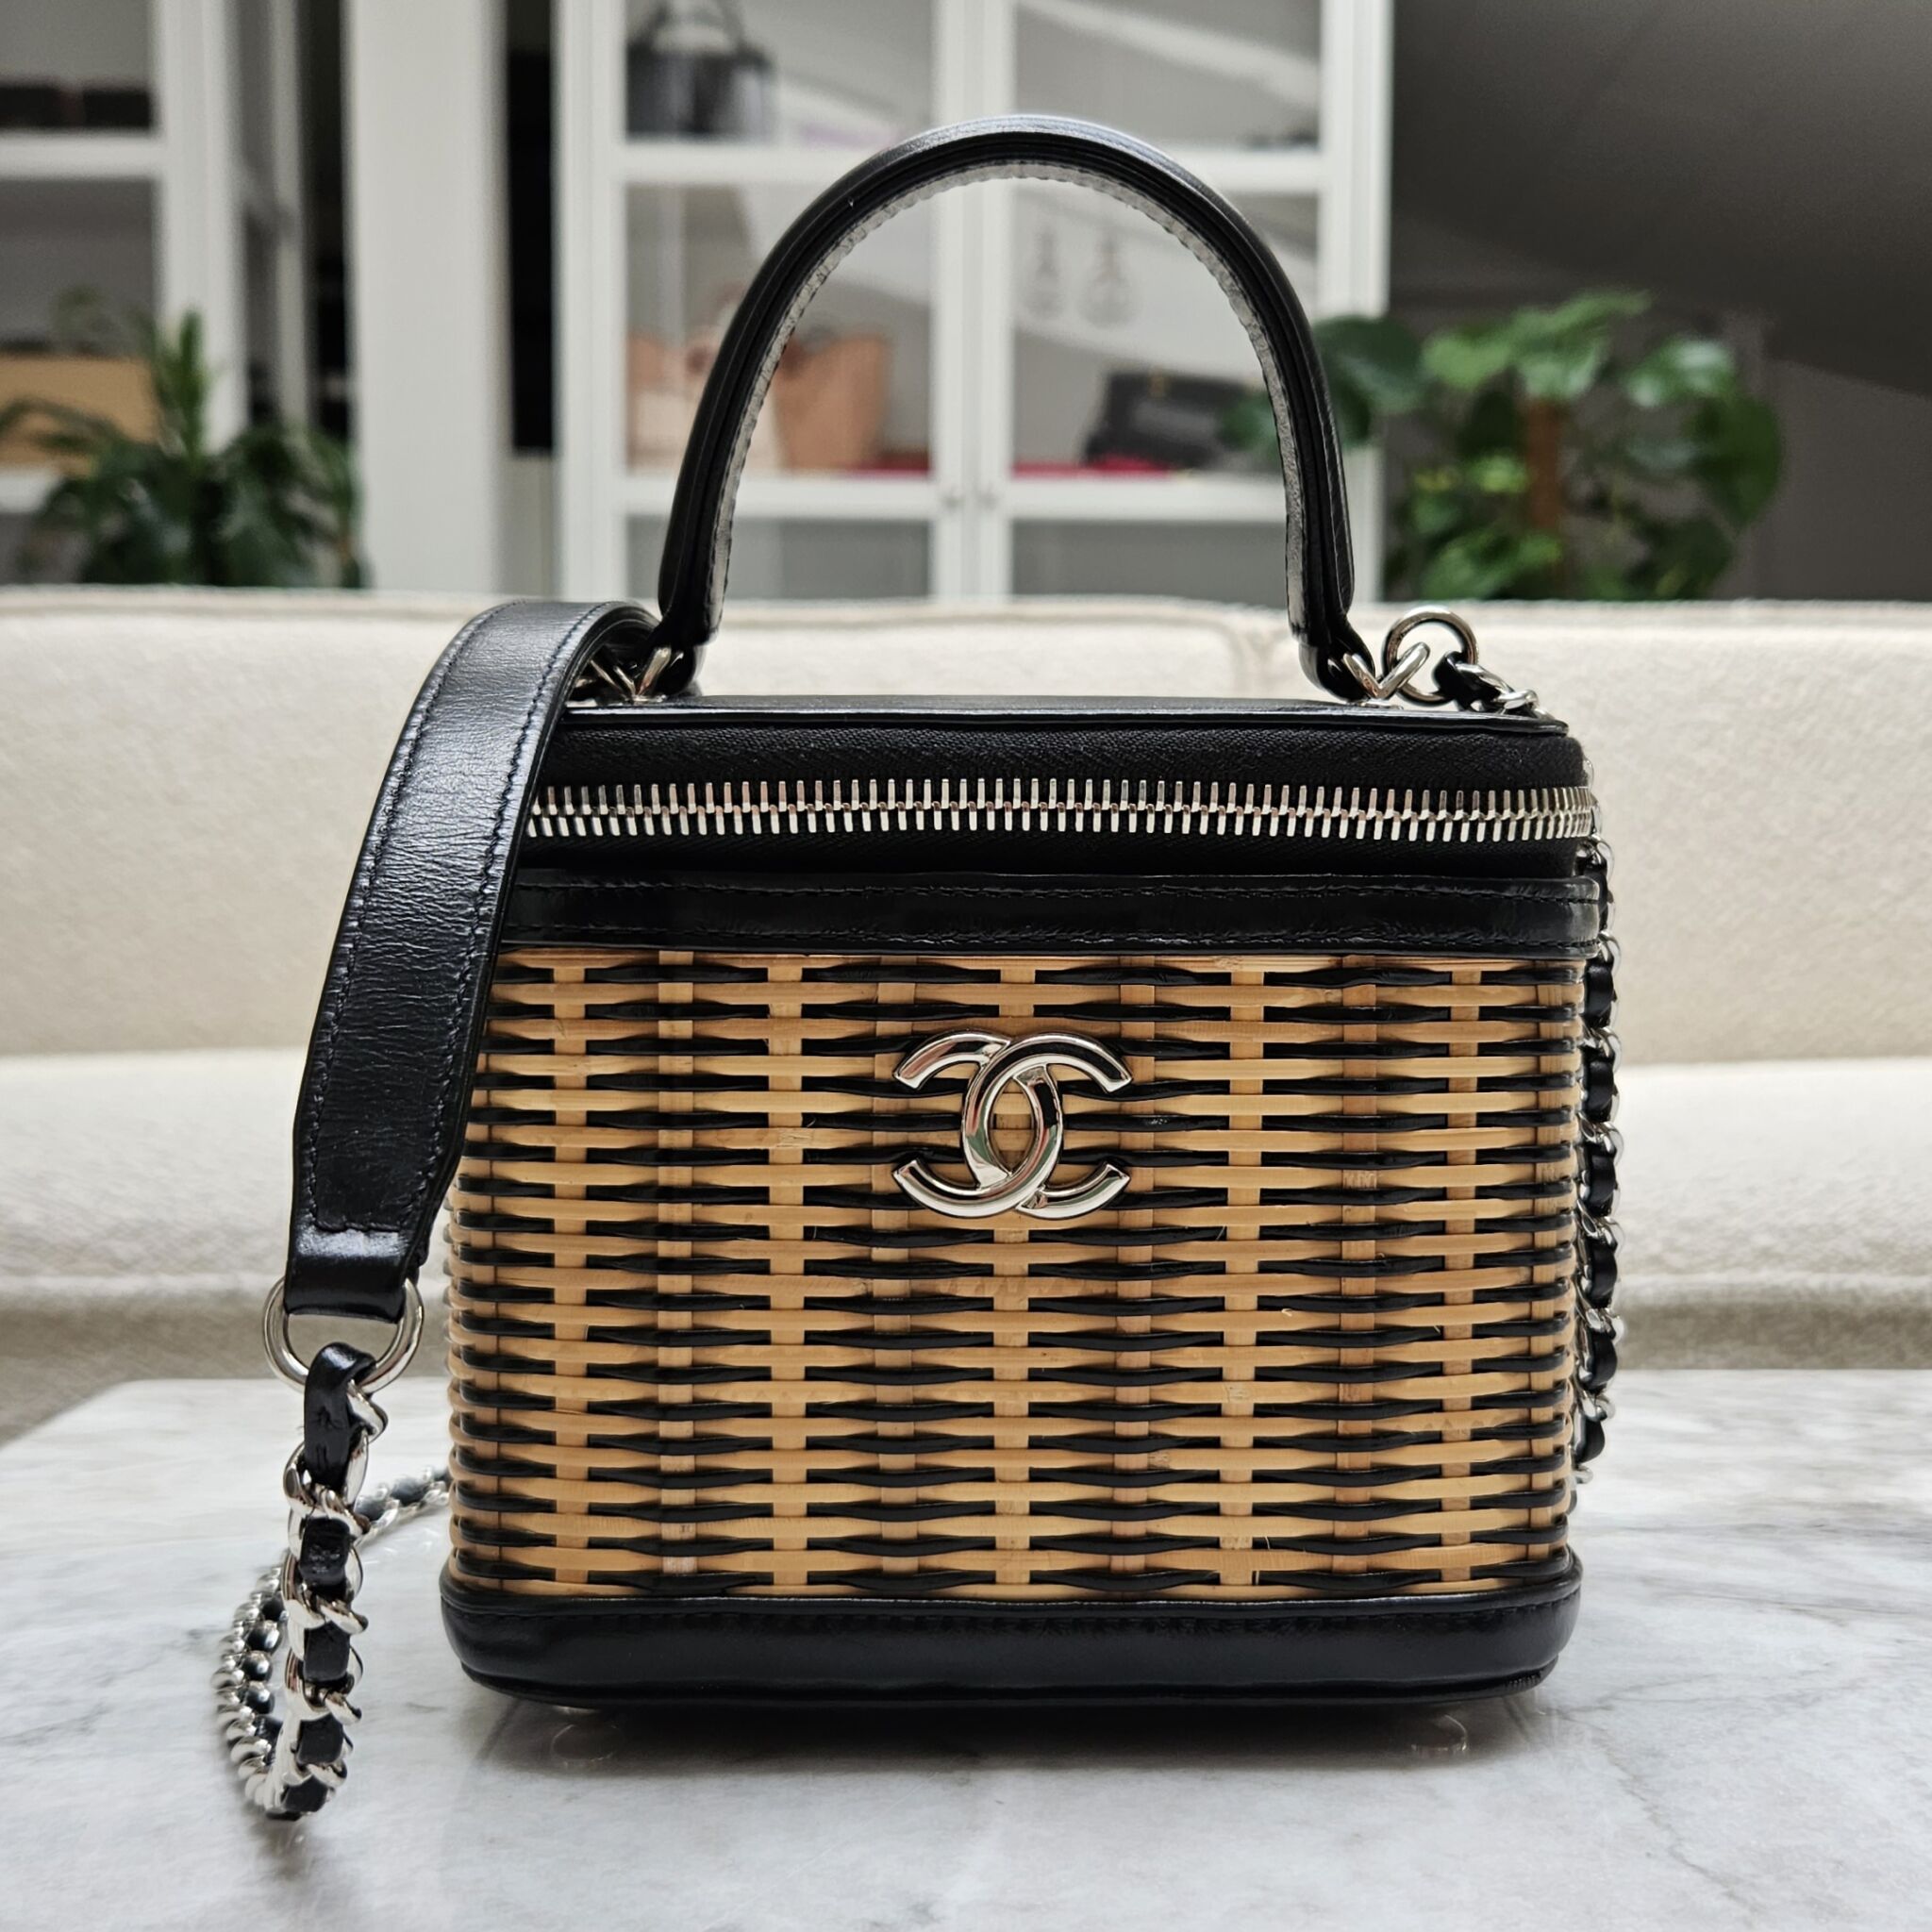 Chanel Mini Vanity Bag with Top handle, Raffia/Sort SHW - Laulay Luxury